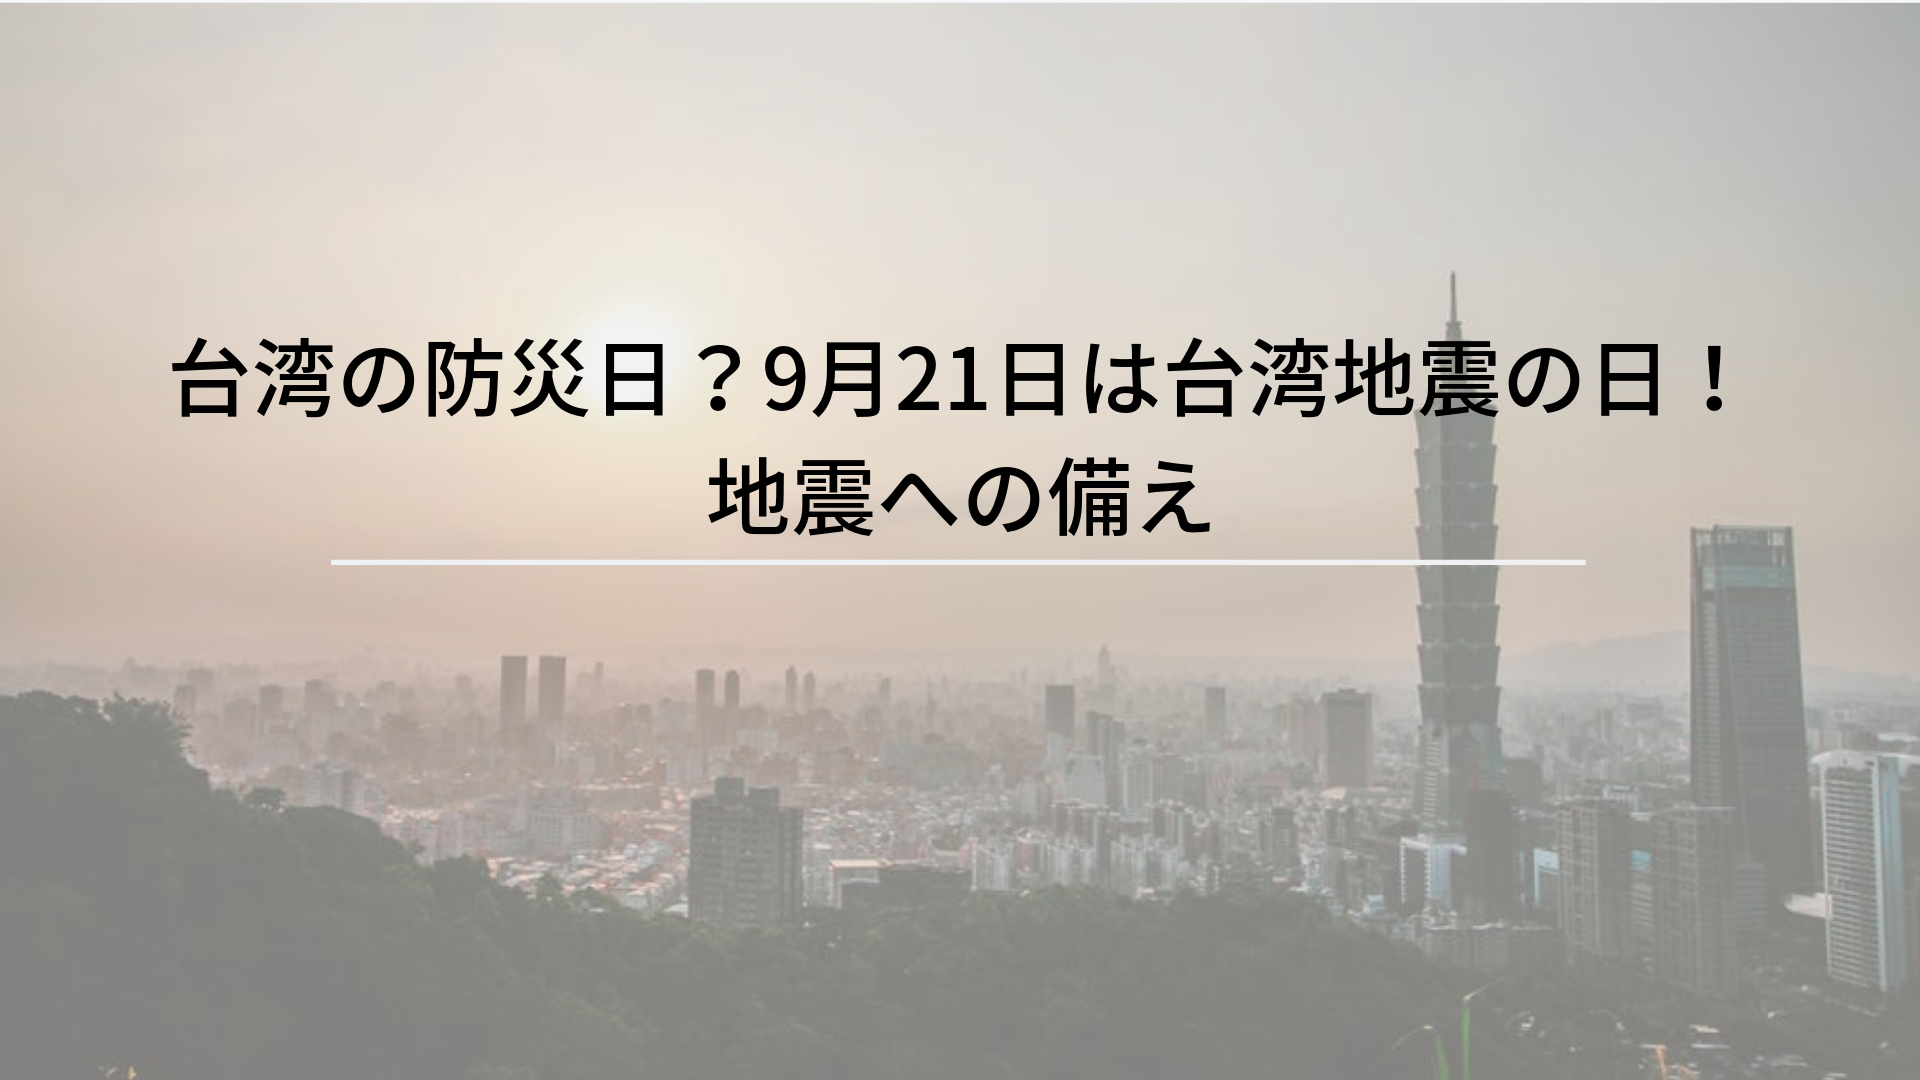 优享资讯 | 台湾晚上6.4级地震 本港天文台接市民报告感到微震